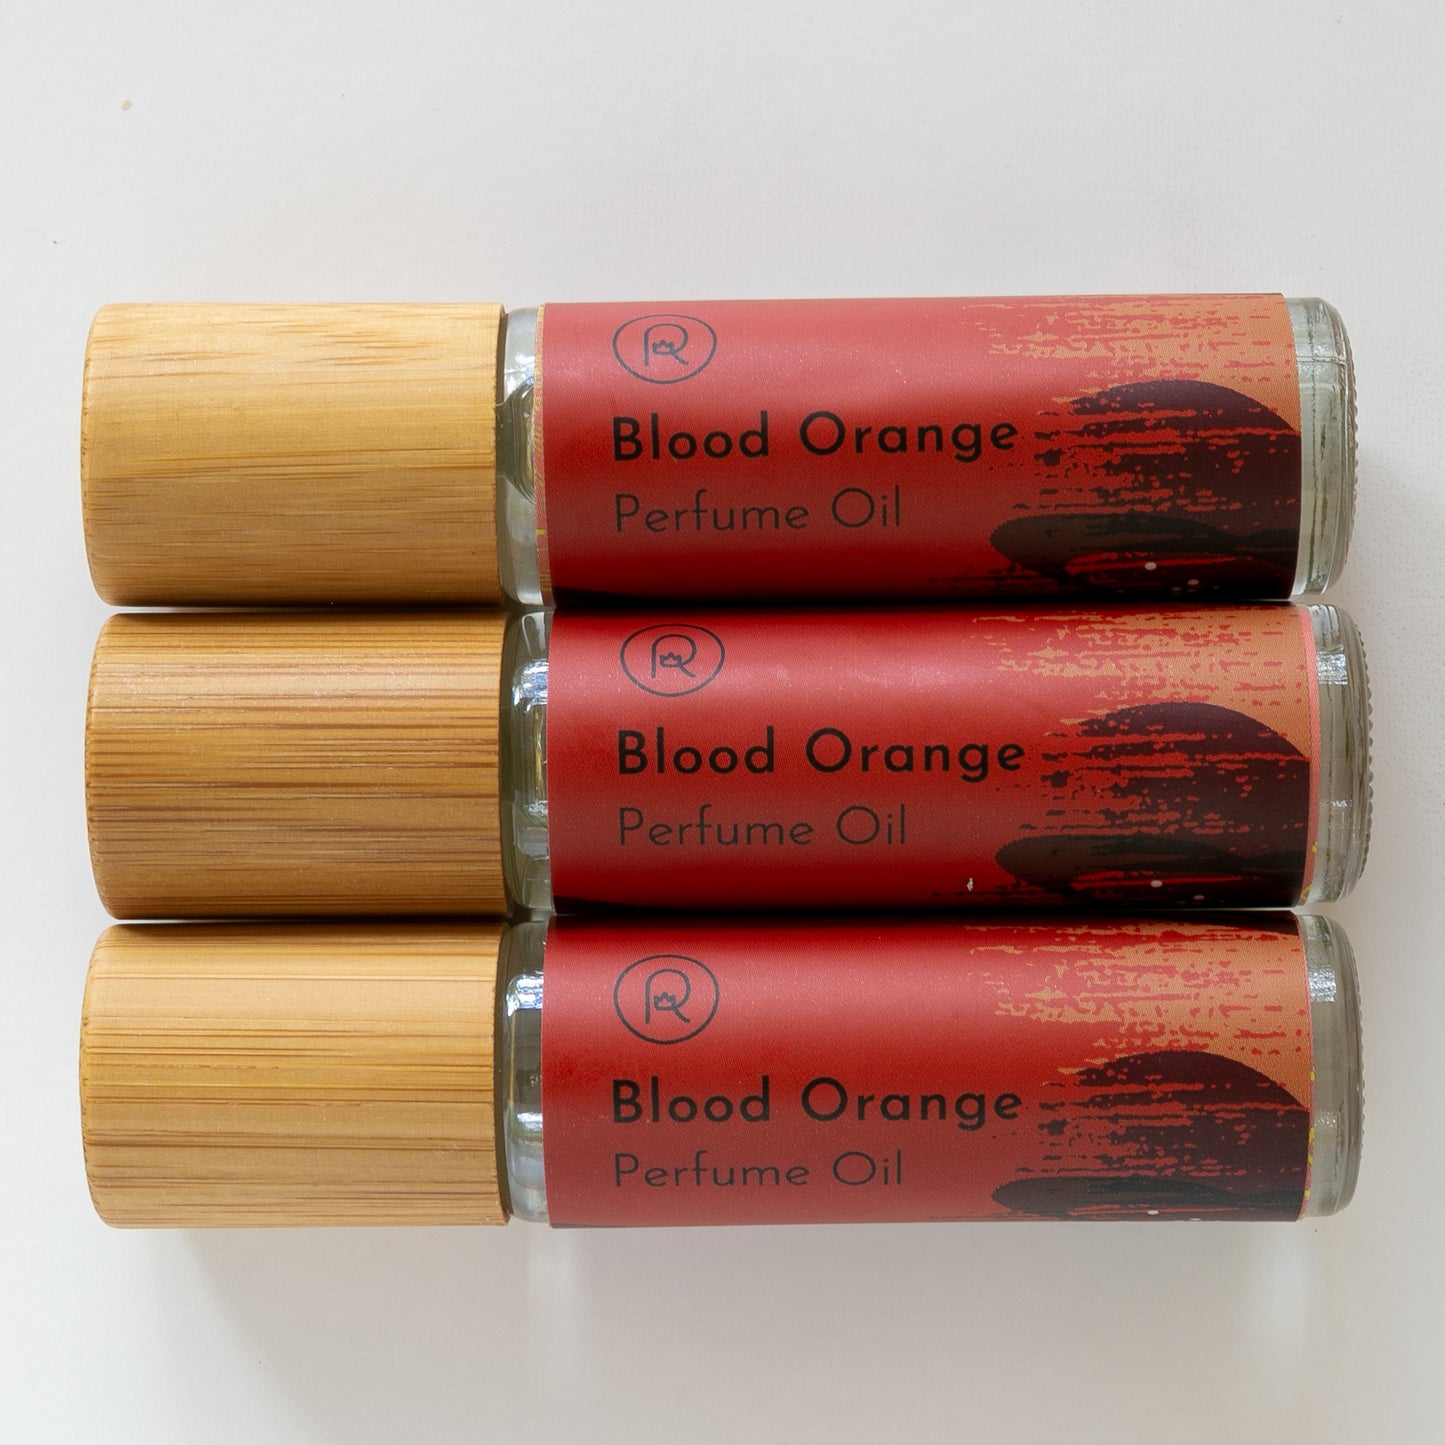 Blood Orange Perfume Oil